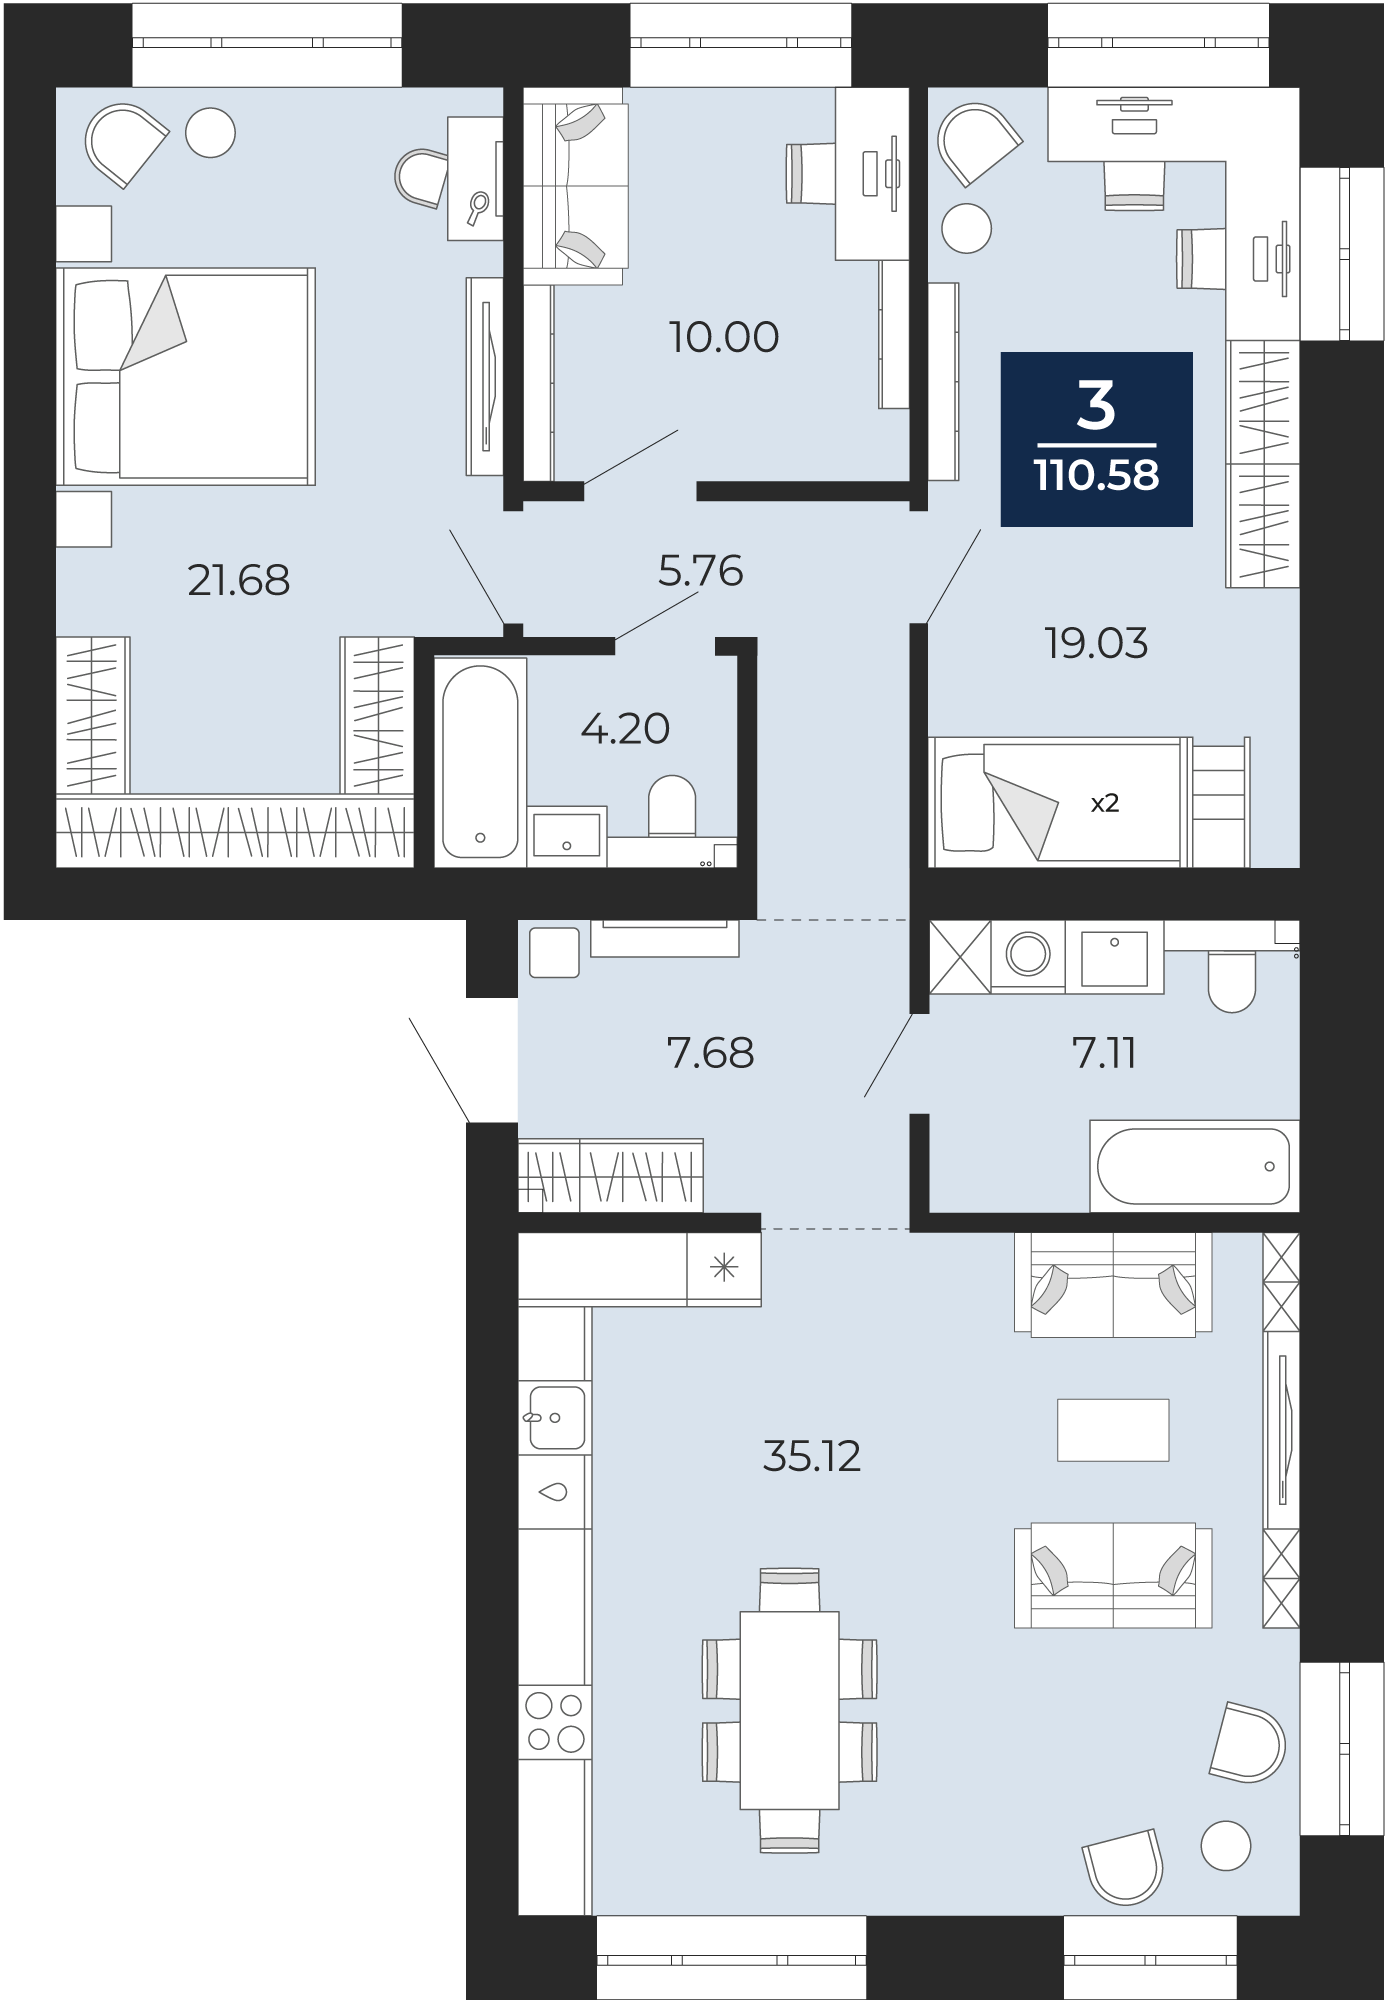 Квартира № 6, 3-комнатная, 110.58 кв. м, 2 этаж